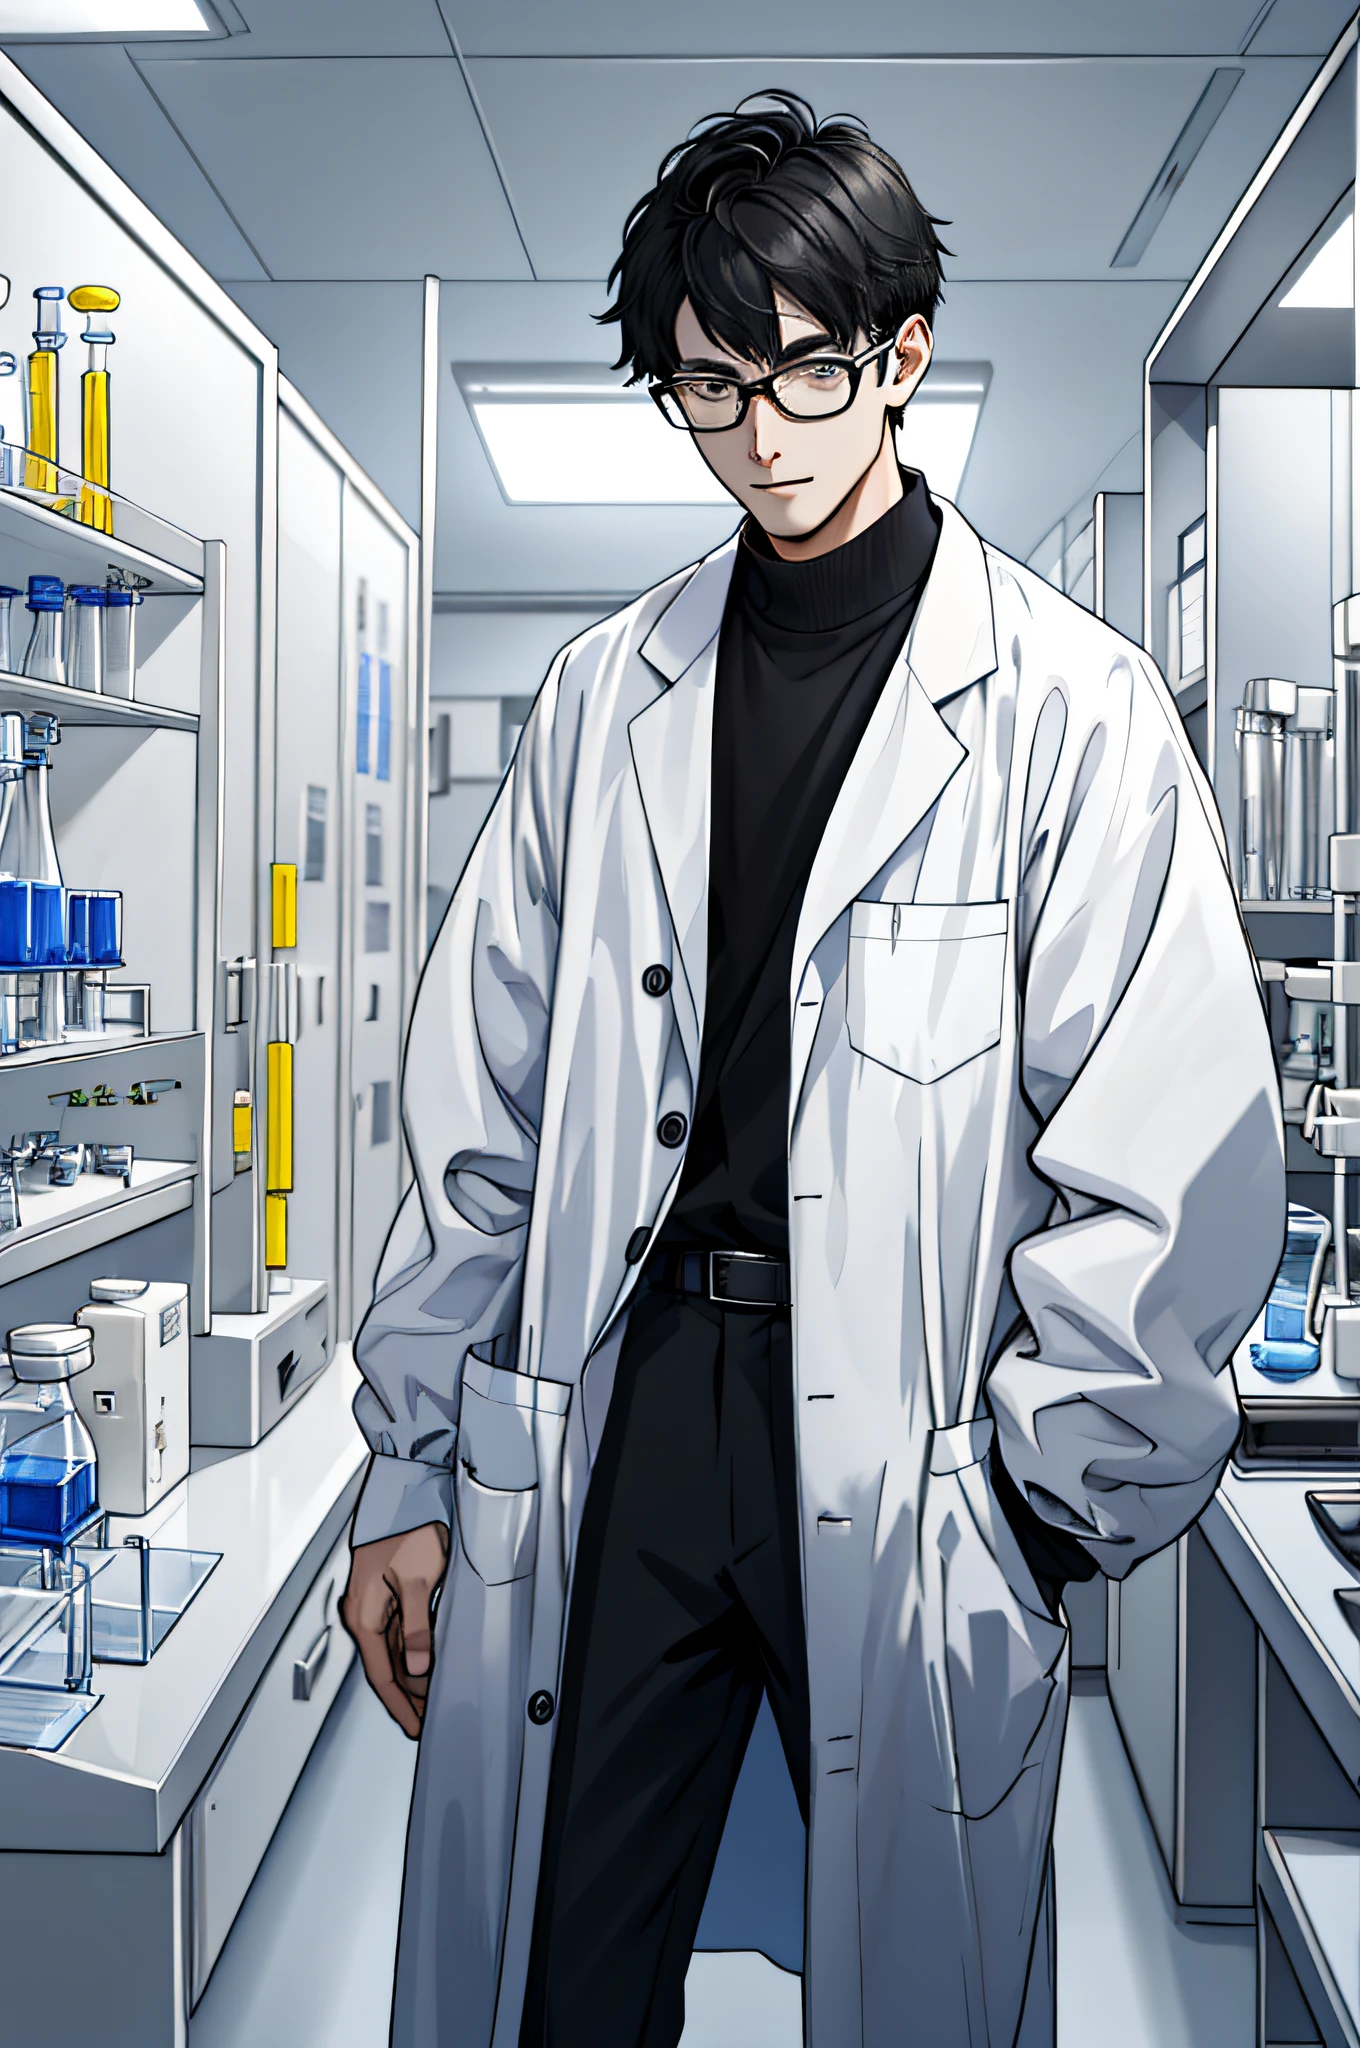 "背の高い若い物理学者を描く，白衣を着る，研究室に立っていた，実験用ボトルを使った科学実験に焦点を当てる。"